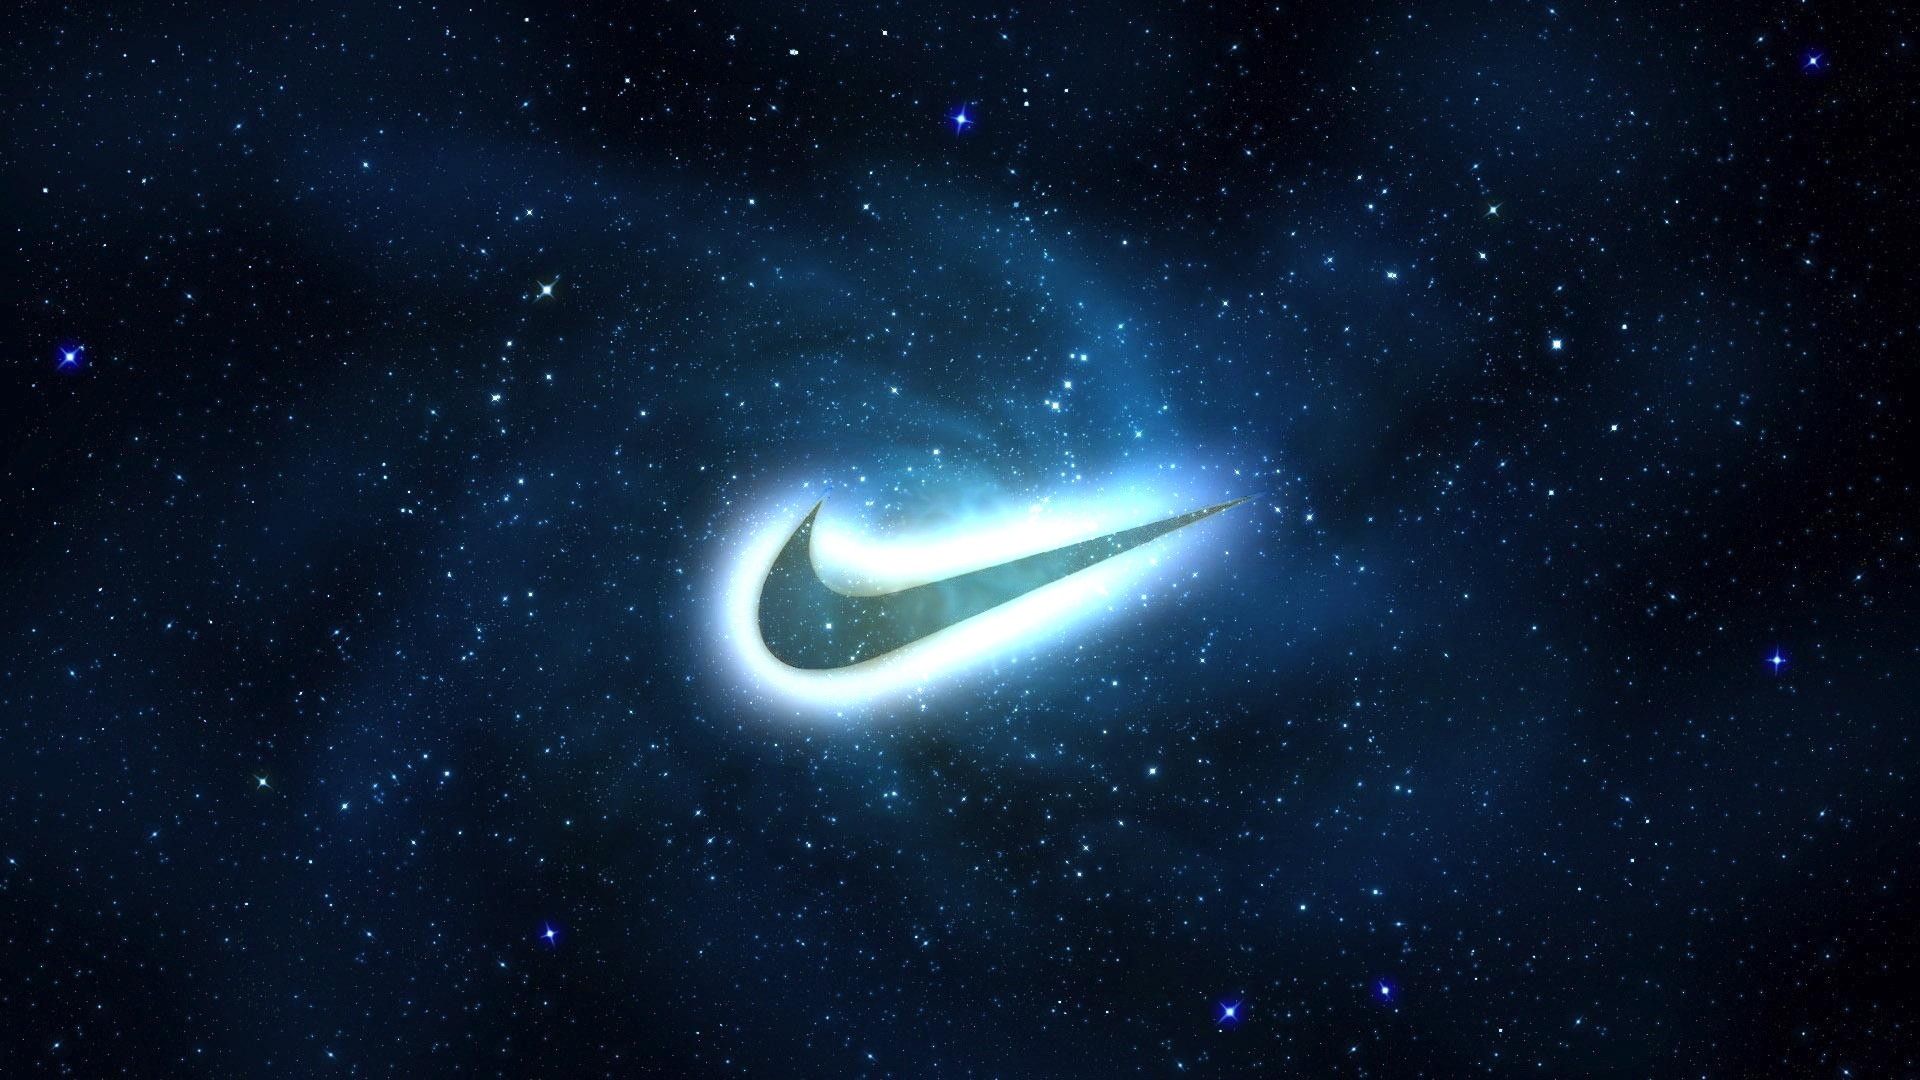 Không gian ngoài của Nike: Bạn đã bao giờ tưởng tượng được không gian ngoài của Nike sẽ như thế nào chưa? Với hình ảnh này, bạn sẽ được trải nghiệm không gian vô hạn của thương hiệu Nike và khám phá bản sắc riêng biệt của họ trong thiết kế đặc biệt này.